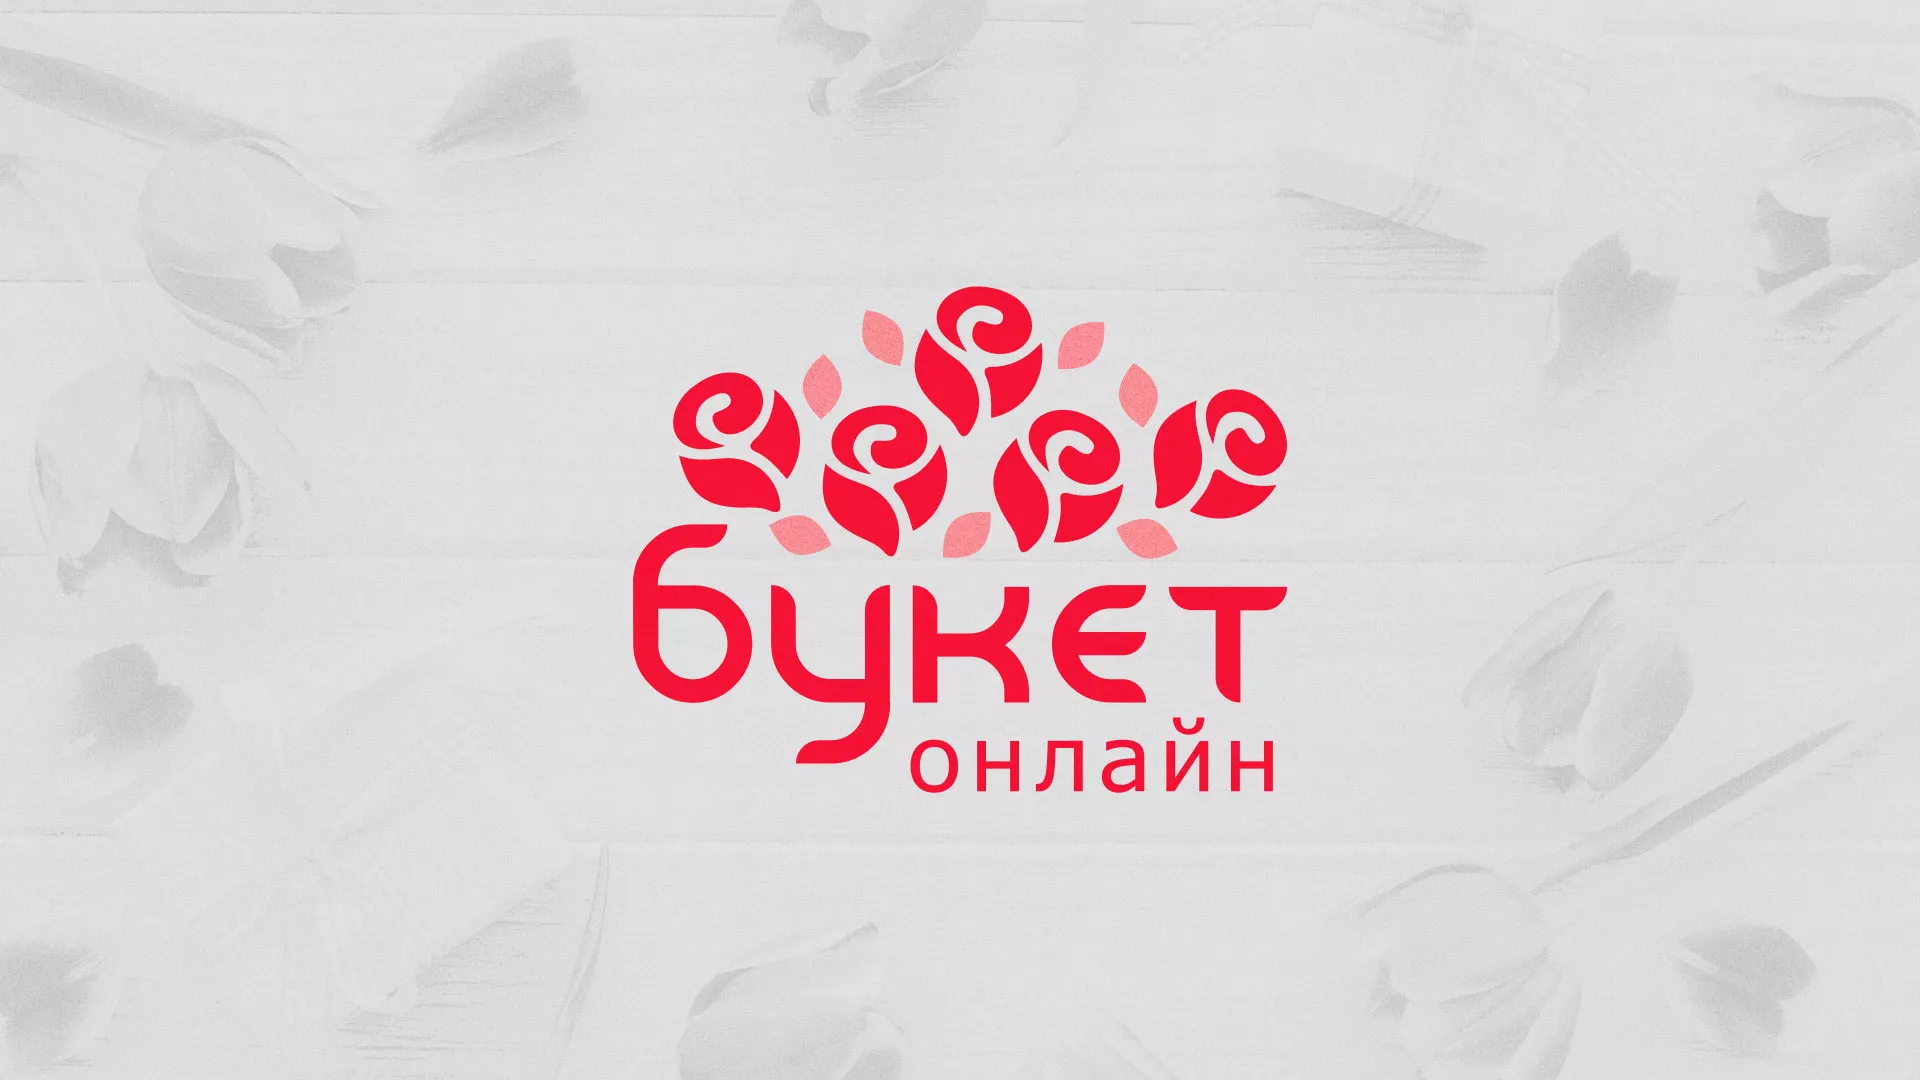 Создание интернет-магазина «Букет-онлайн» по цветам в Дигоре